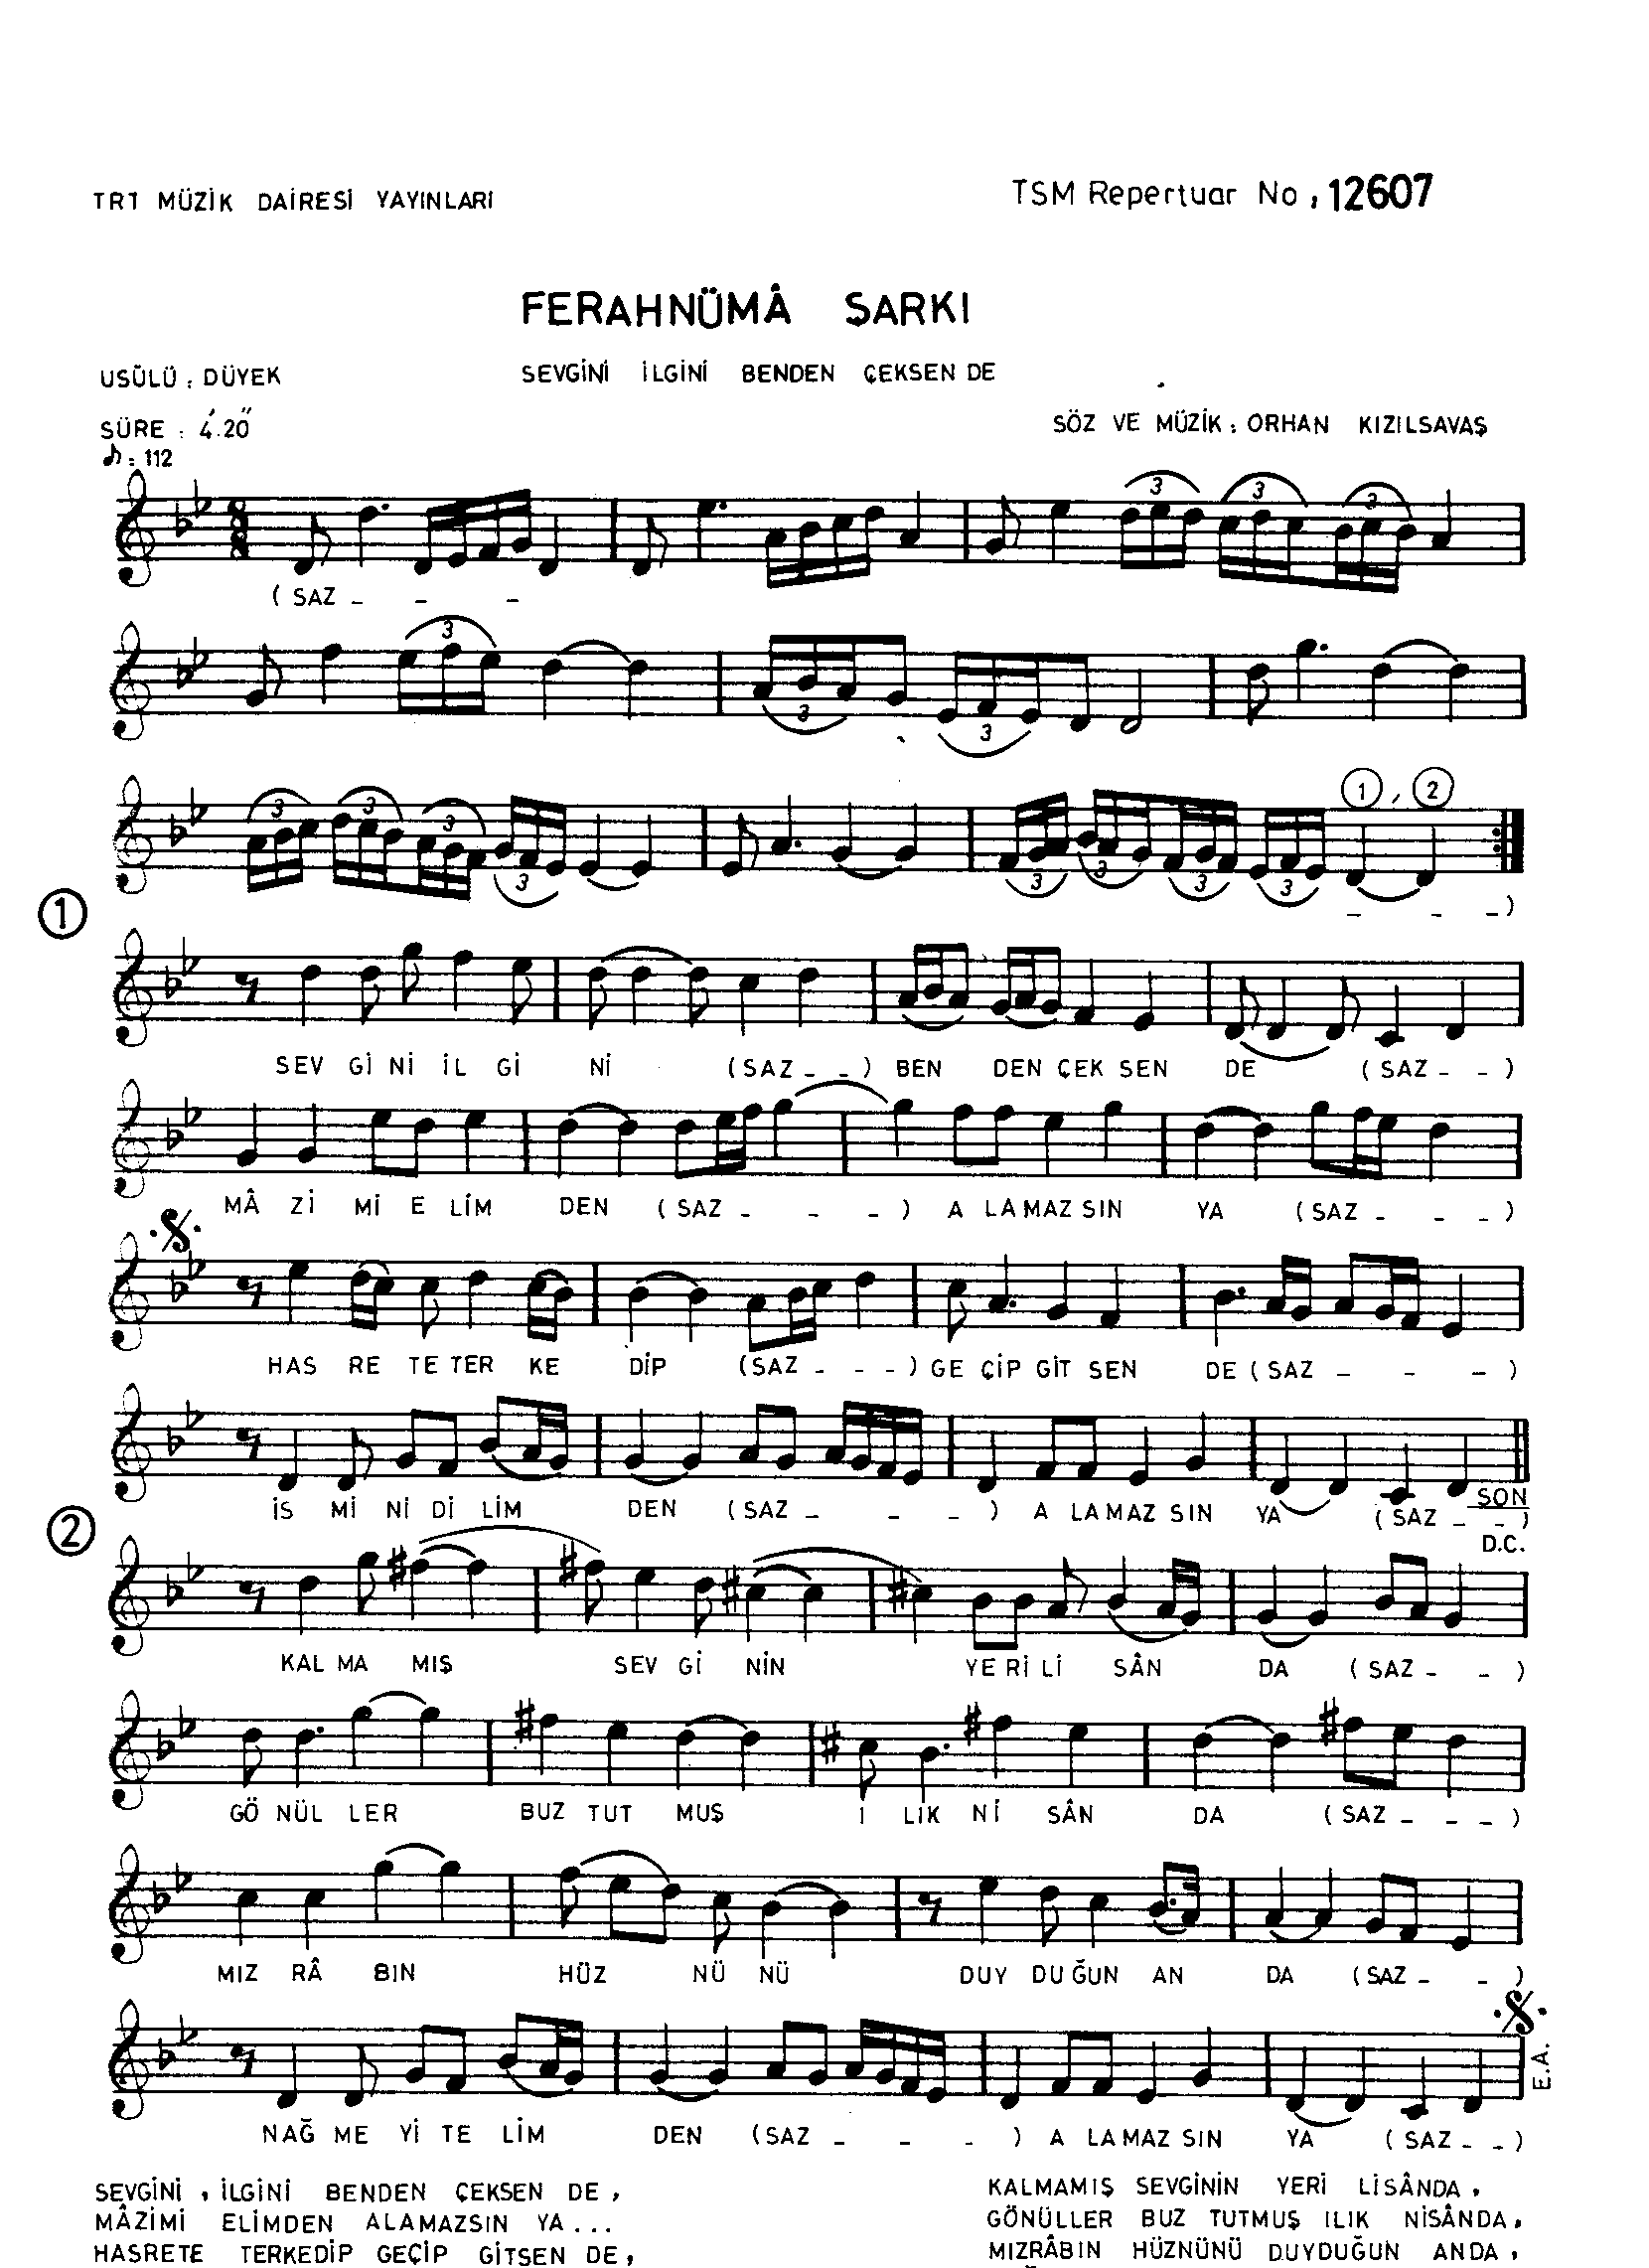 Ferahnüma - Şarkı - Orhan Kızılsavaş - Sayfa 1